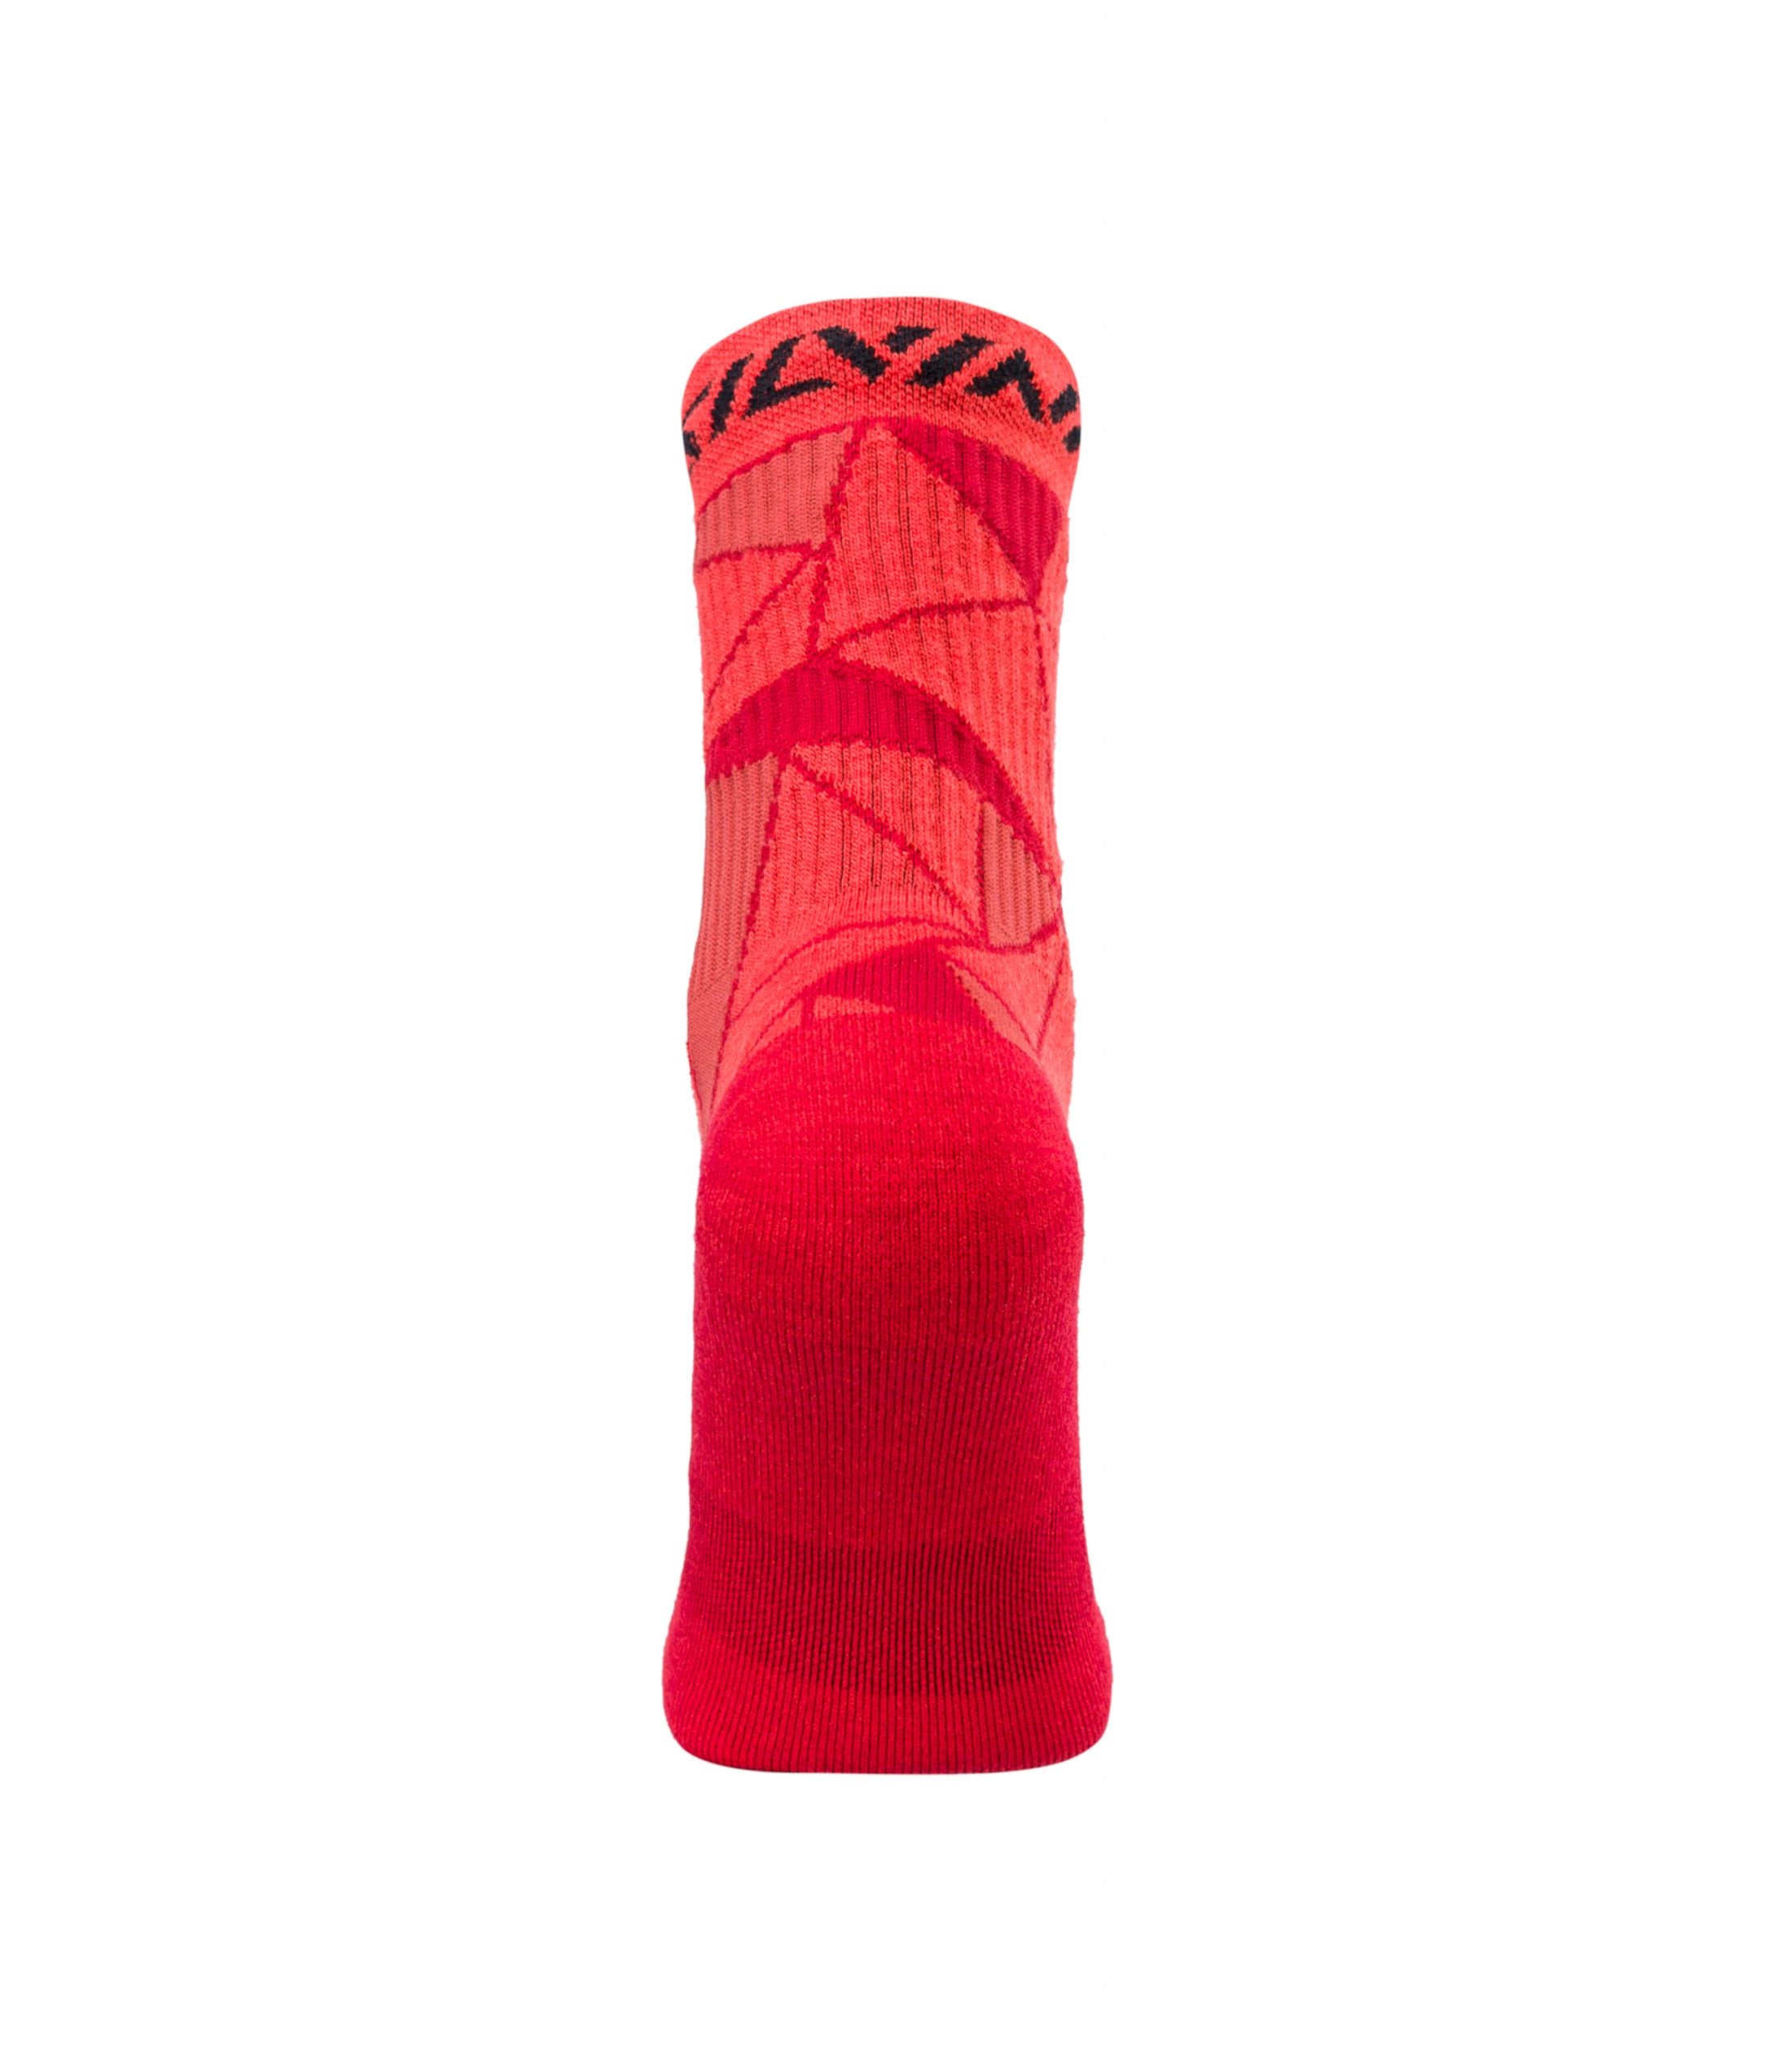 Sportinės kojinės Silvini Vallonga / Red